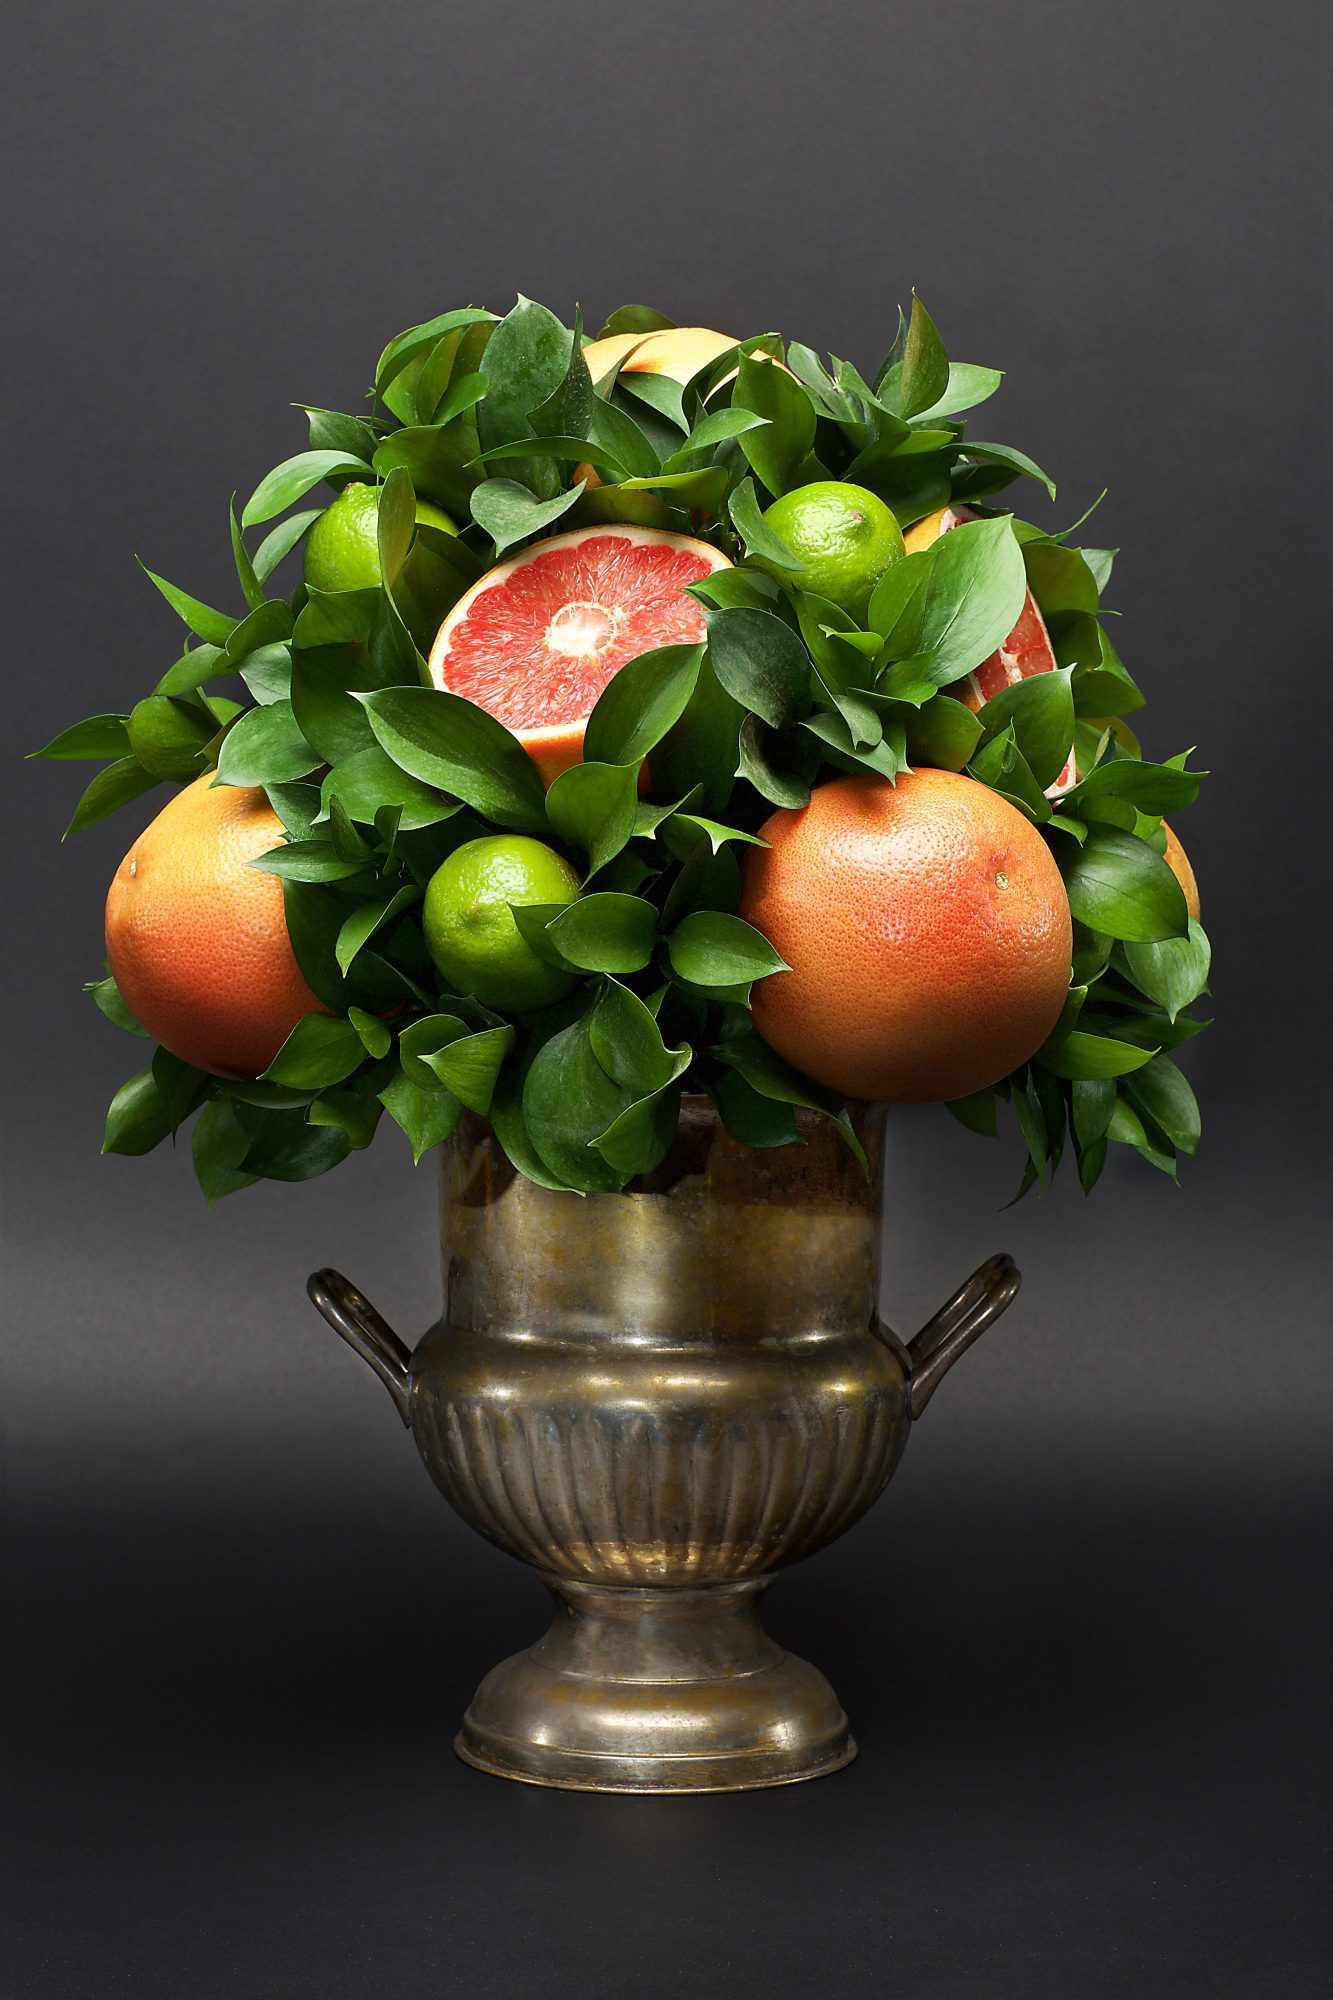 citrus centerpiece grapefruit limes leaves silver vase